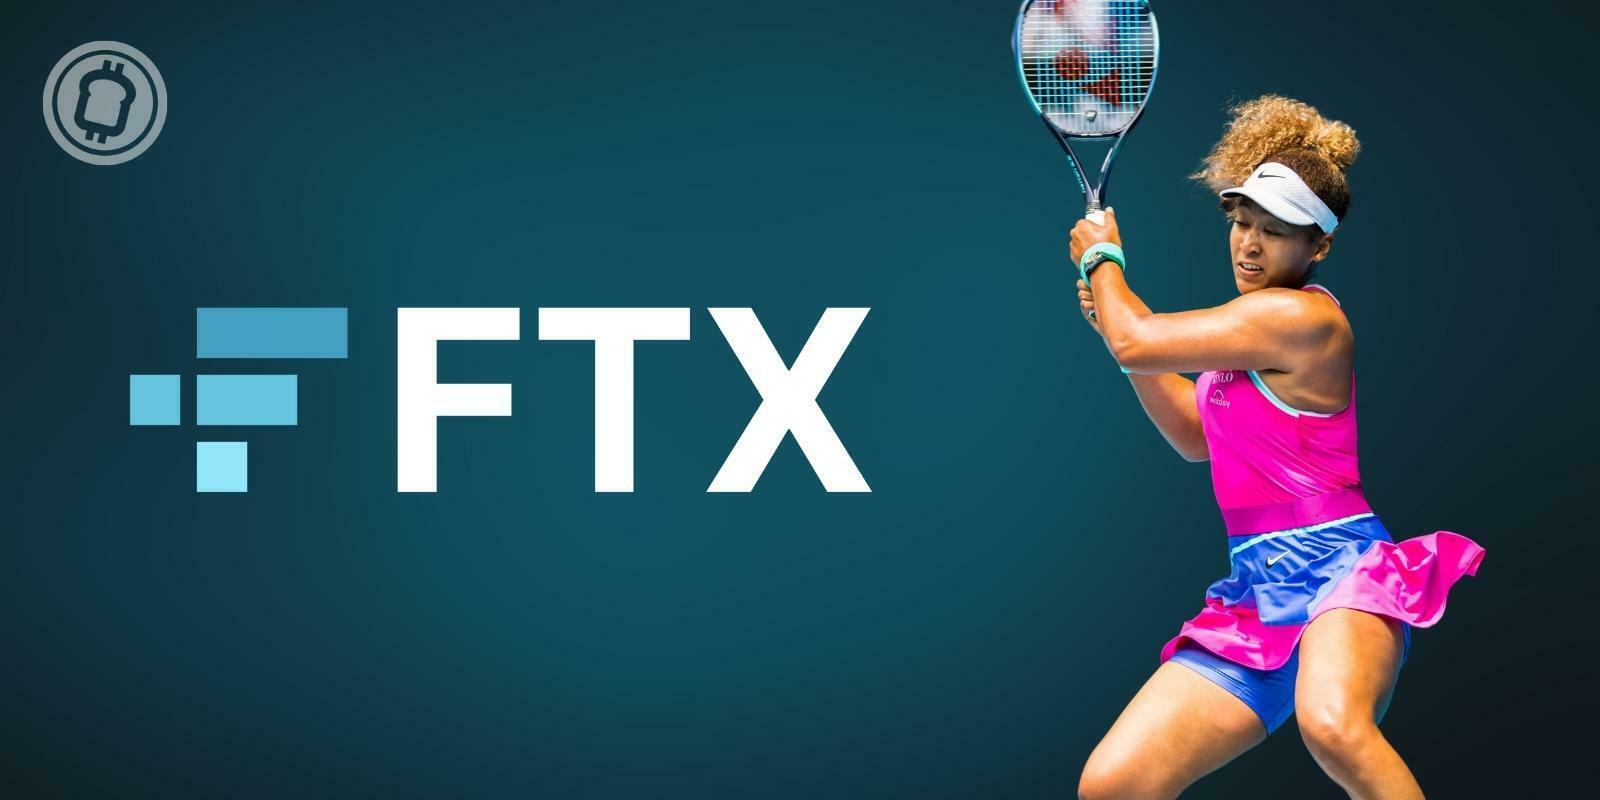 FTX s'associe à la tenniswoman Naomi Osaka pour promouvoir les cryptos auprès des femmes